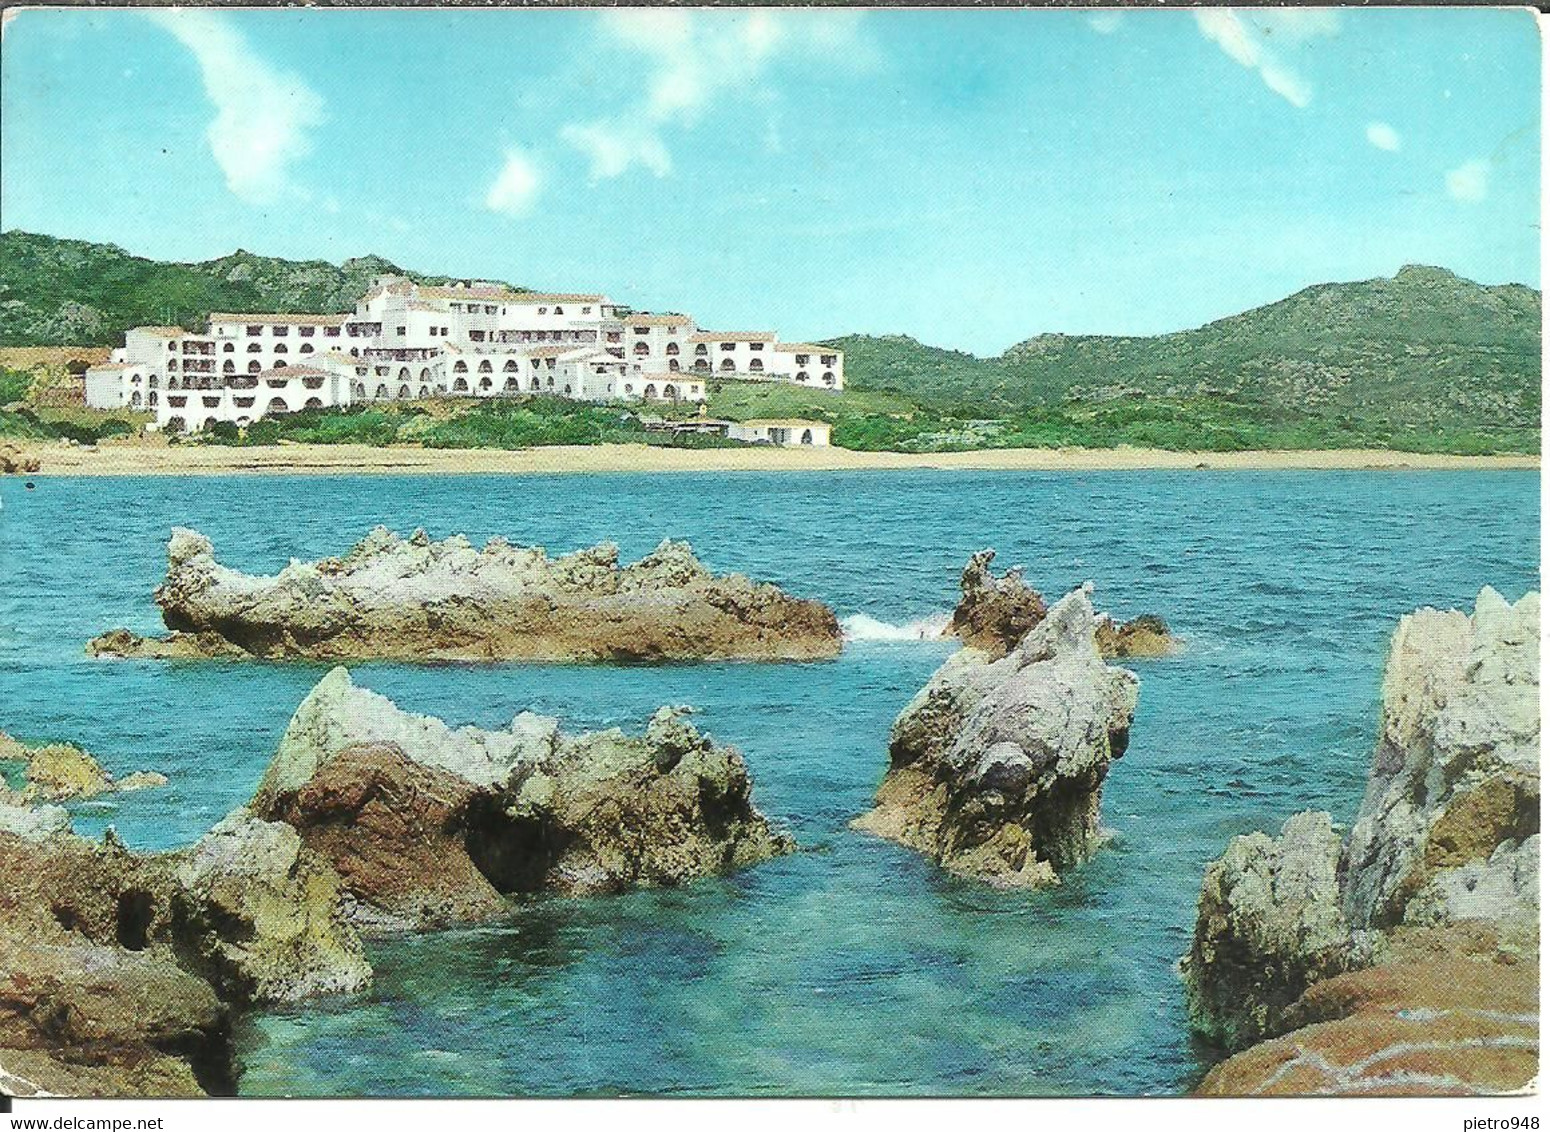 Arzachena (Olbia) Romazzino, "A Belmond" Hotel, Panorama Dal Mare, View Seen From The Sea, Vue De La Mer - Olbia